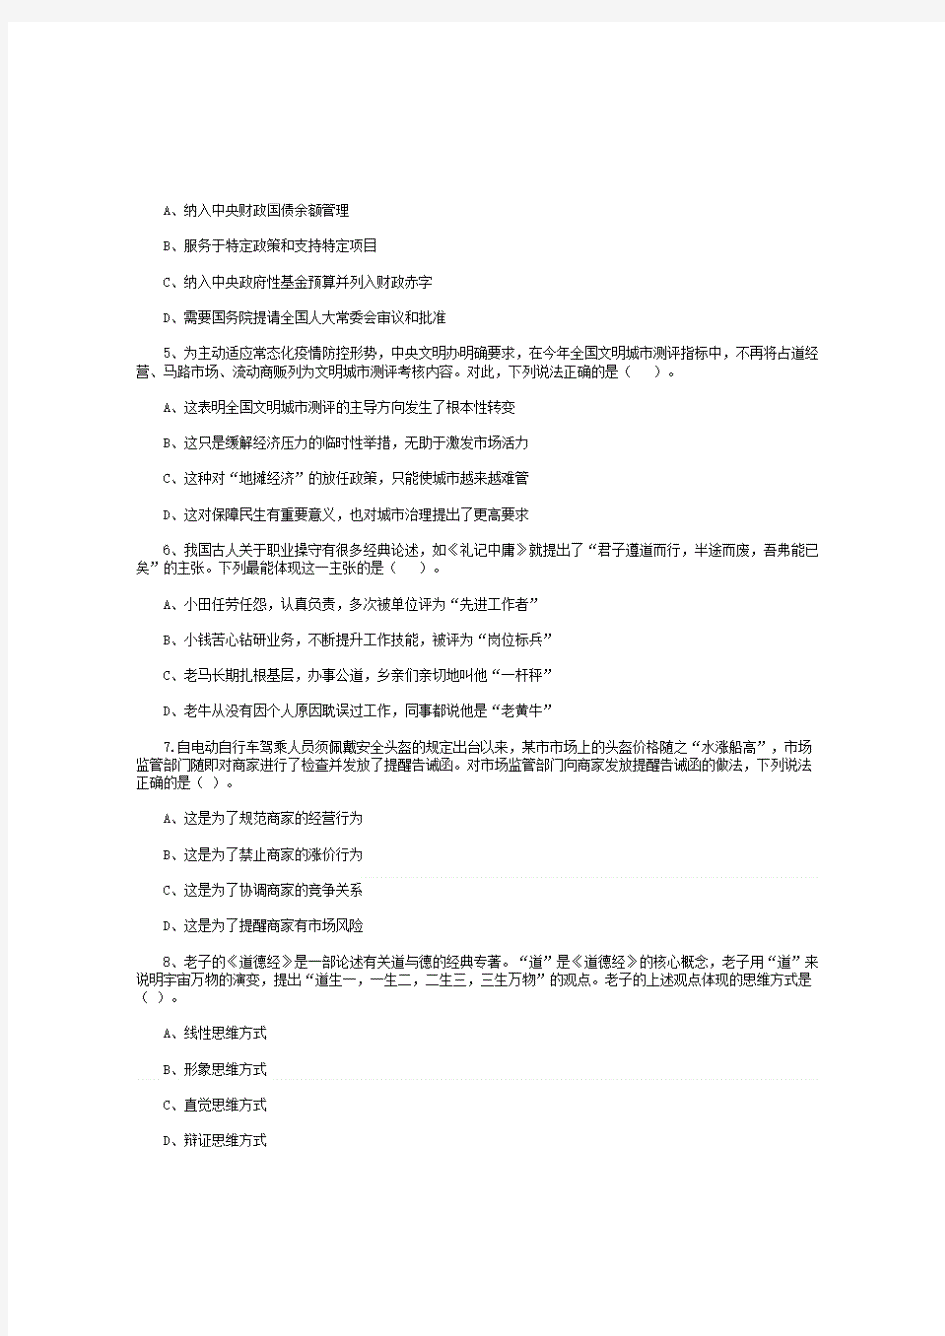 2020年江苏事业单位统考笔试真题及答案【完整版】